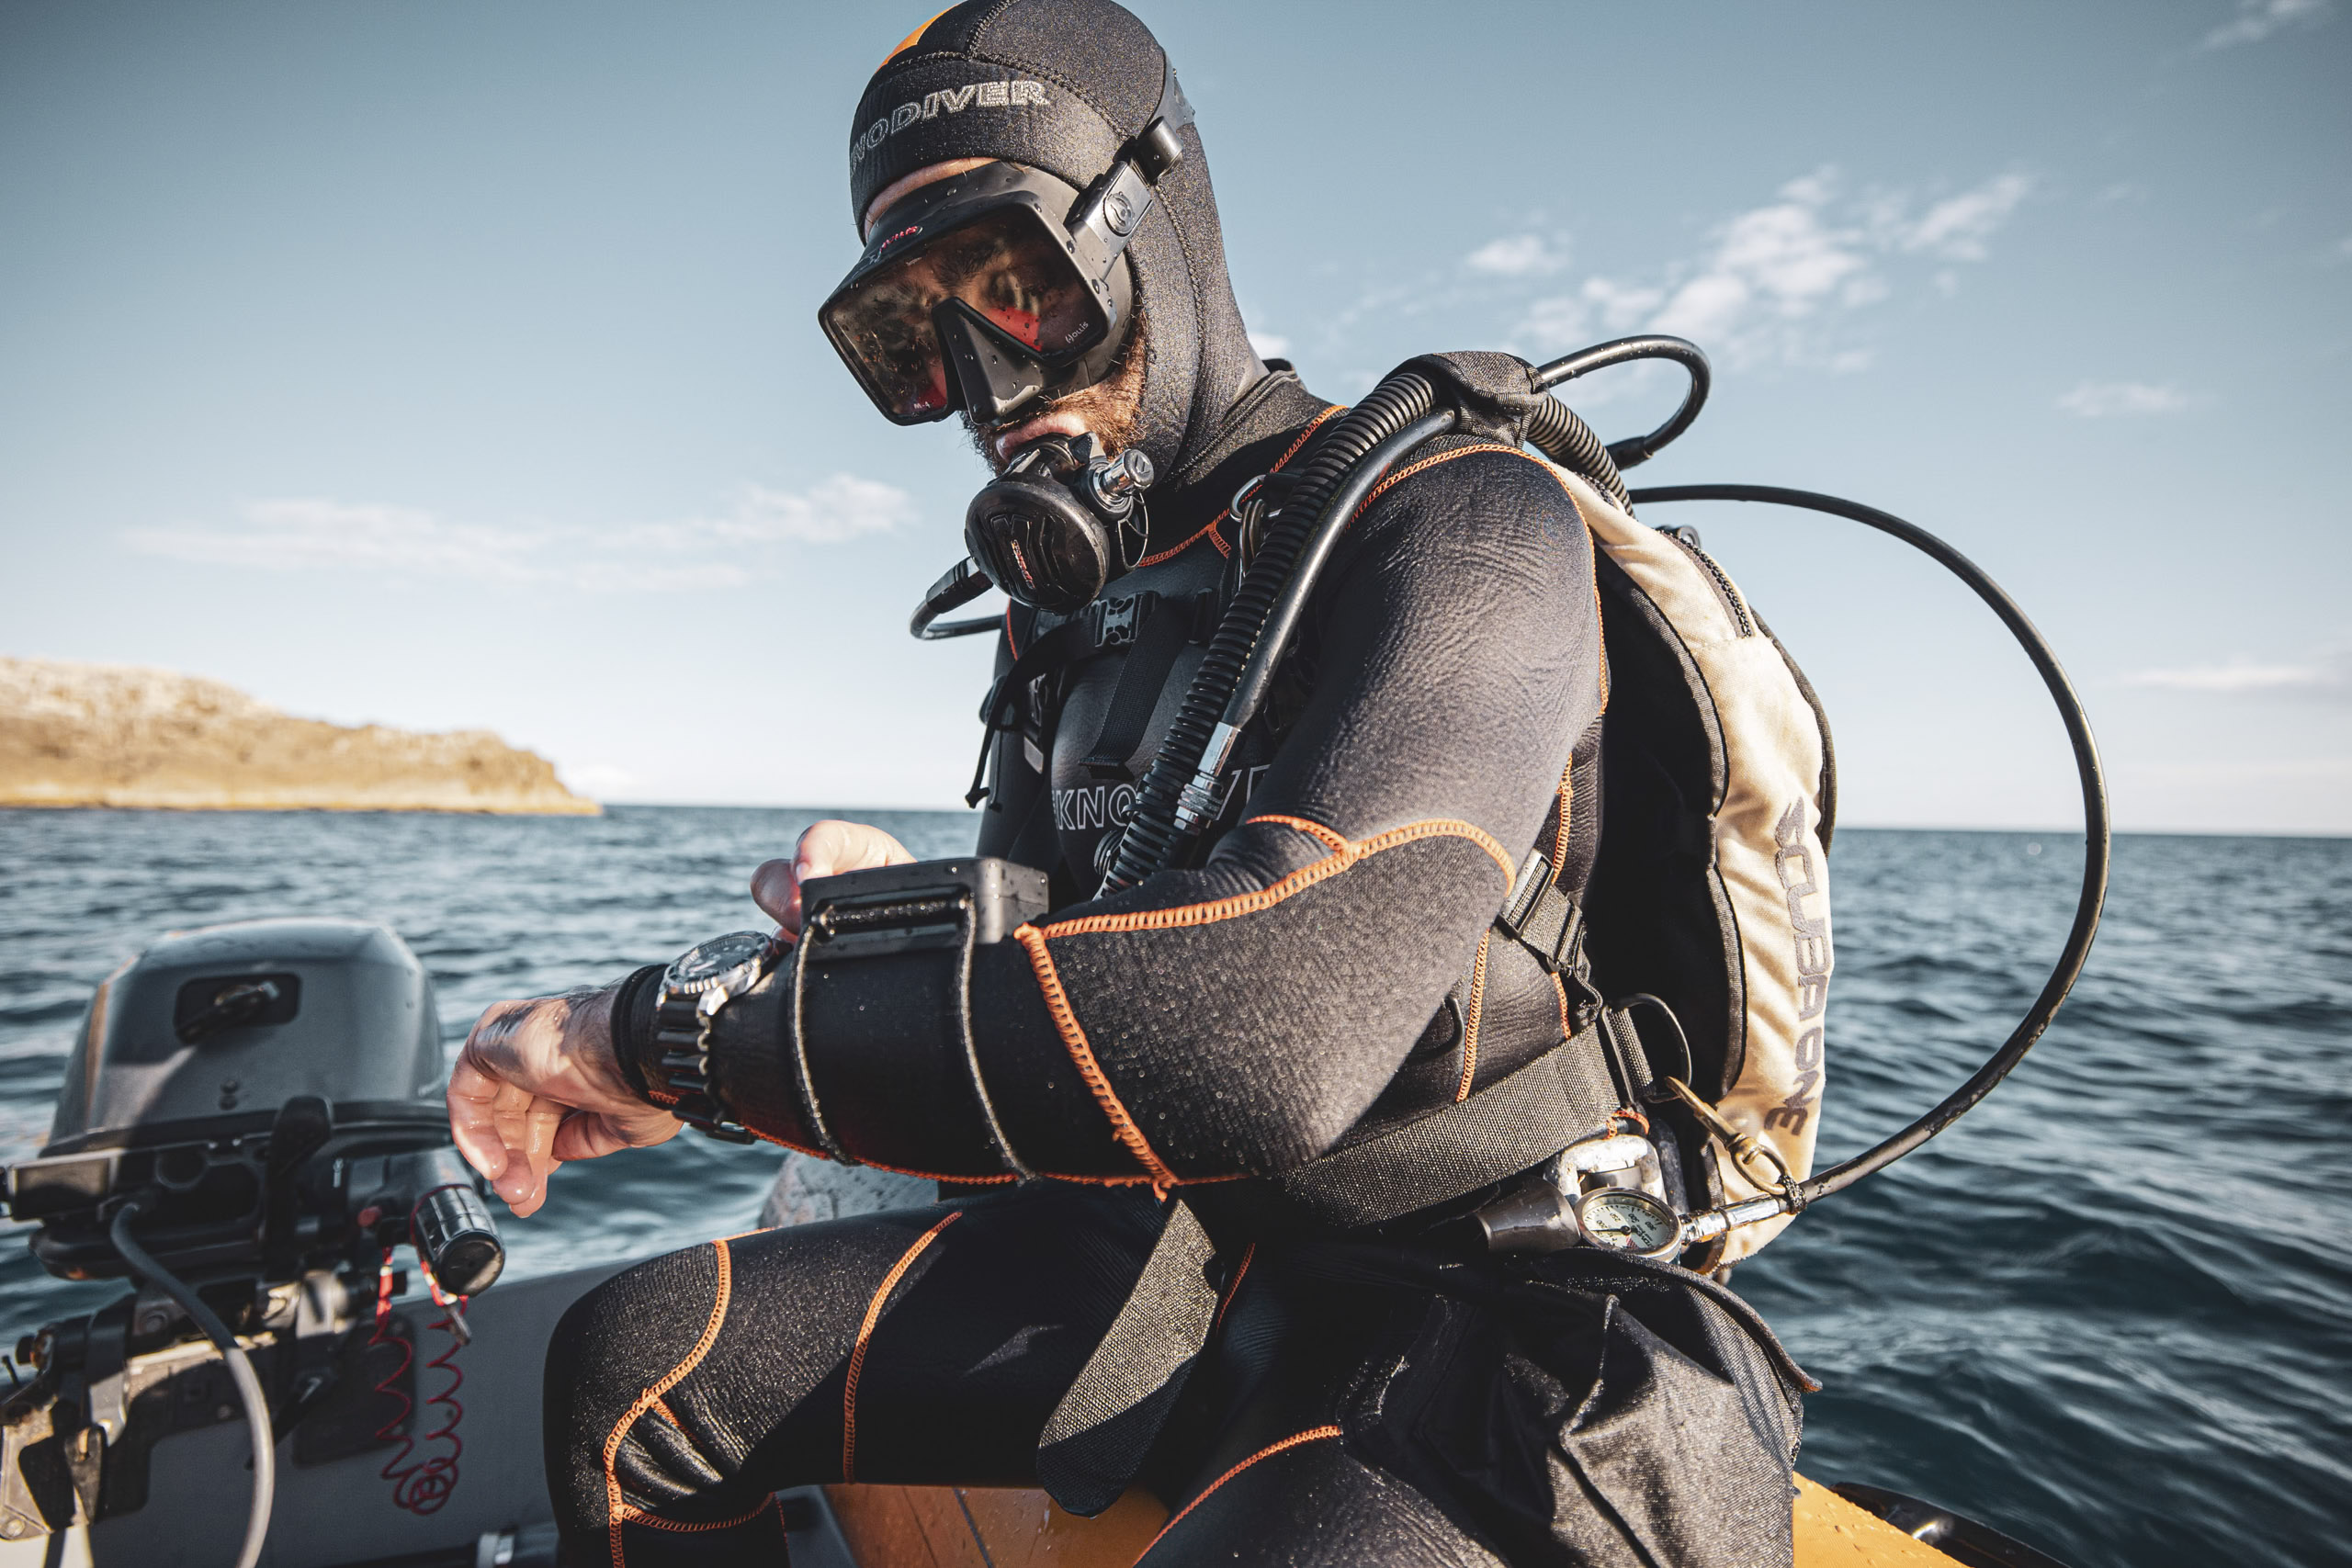 Ein Taucher in voller Montur, mit schwarzem Neoprenanzug und Maske, bereitet seine Ausrüstung auf einem Boot mit Blick auf das klare blaue Wasser vor. © Fotografie Tomas Rodriguez